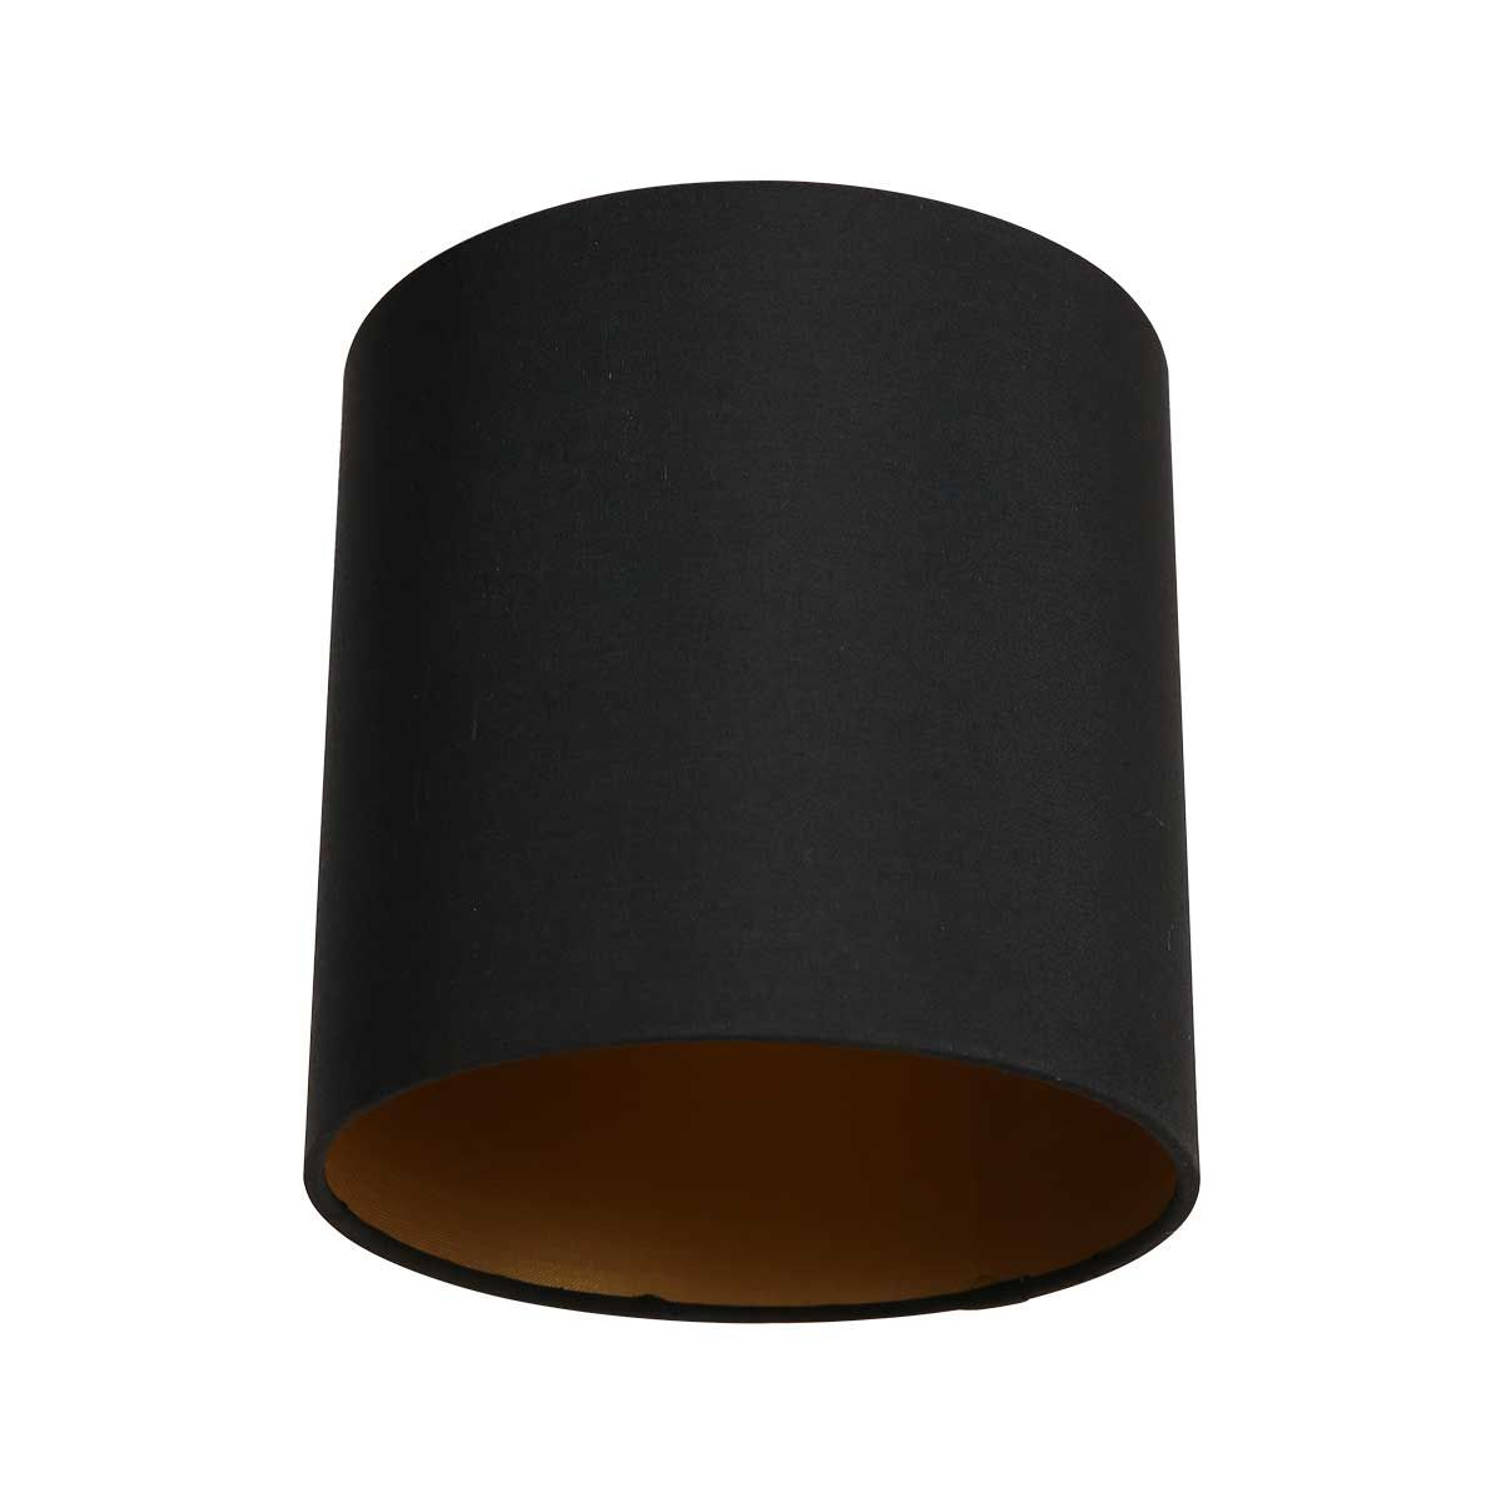 Mexlite Lampenkappen lampenkappen - ø 18 cm - E27 (grote fitting) - zwart